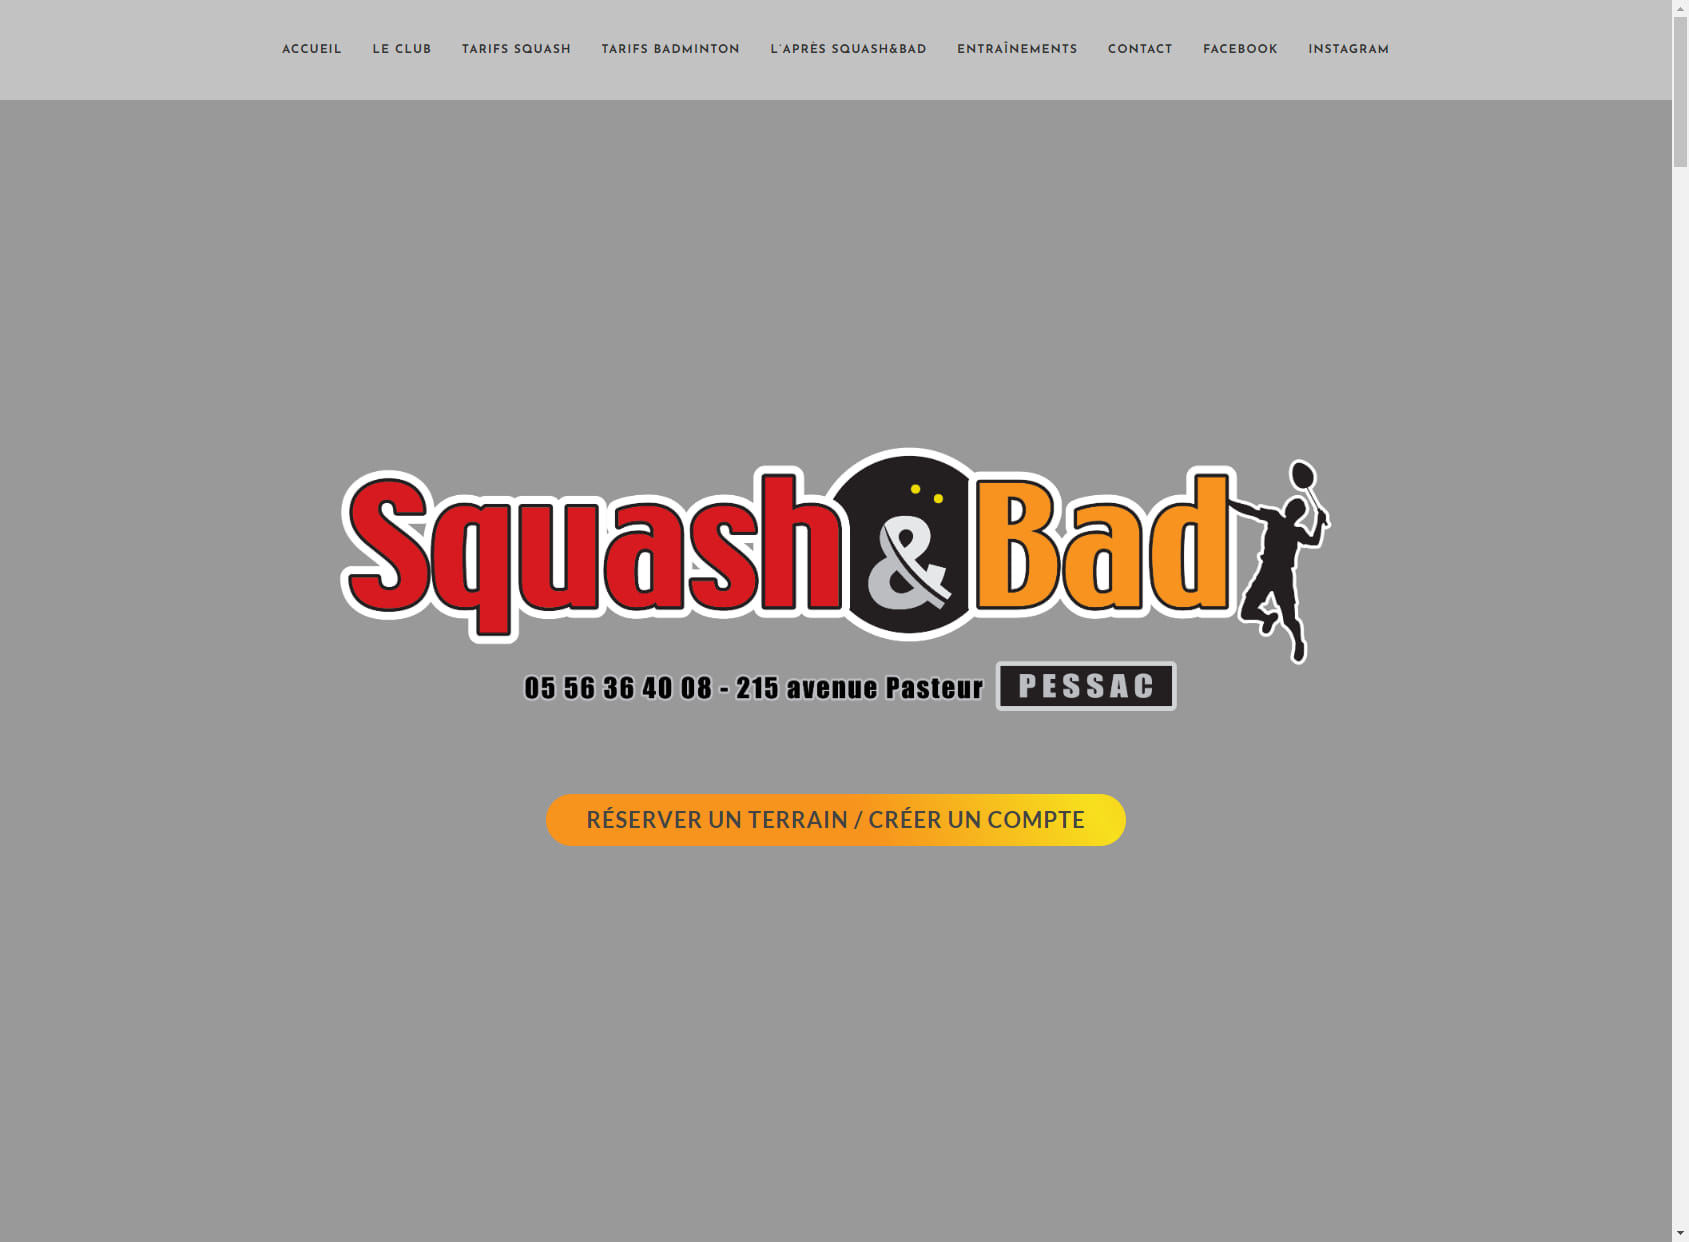 Squash&Bad de Pessac